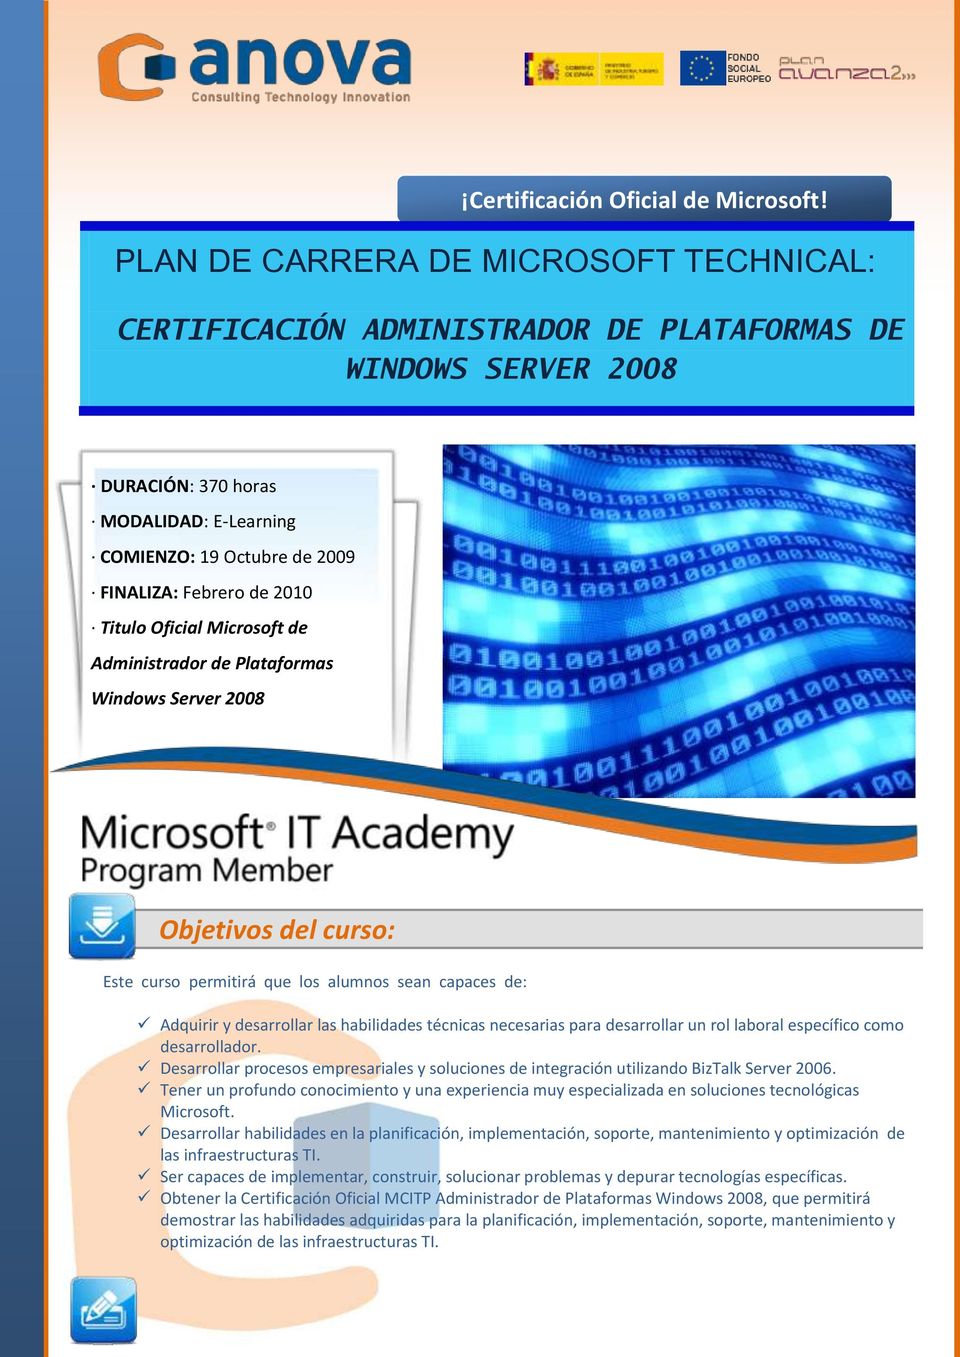 2010 Titulo Oficial Microsoft de Administrador de Plataformas Windows Server 2008 Objetivos del curso: Este curso permitirá que los alumnos sean capaces de: Adquirir y desarrollar las habilidades